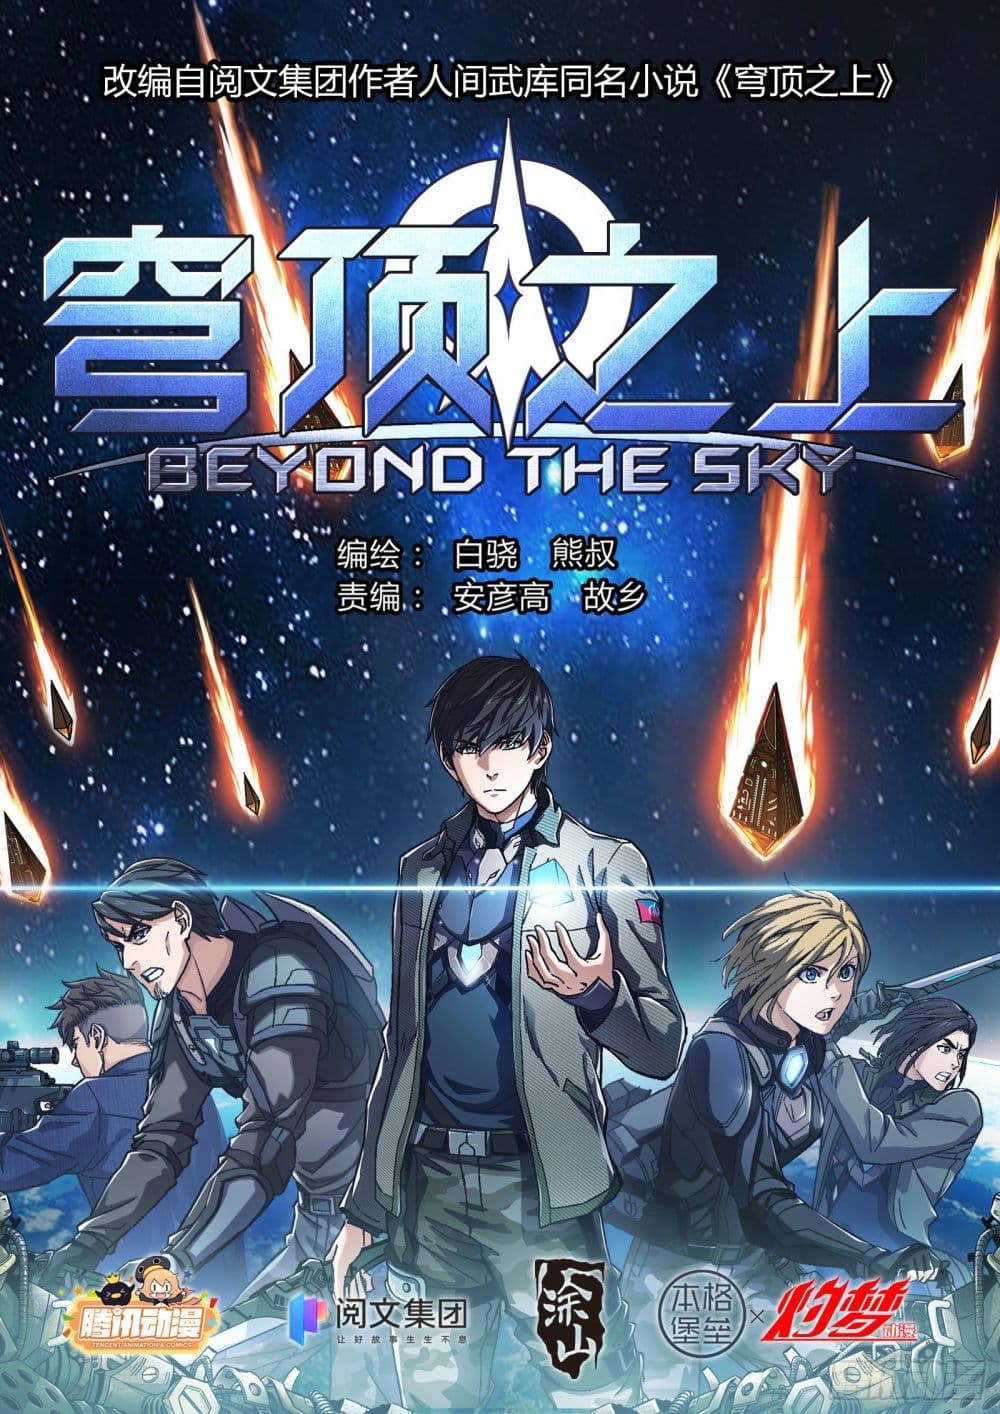 Beyond The Sky 11 (1)